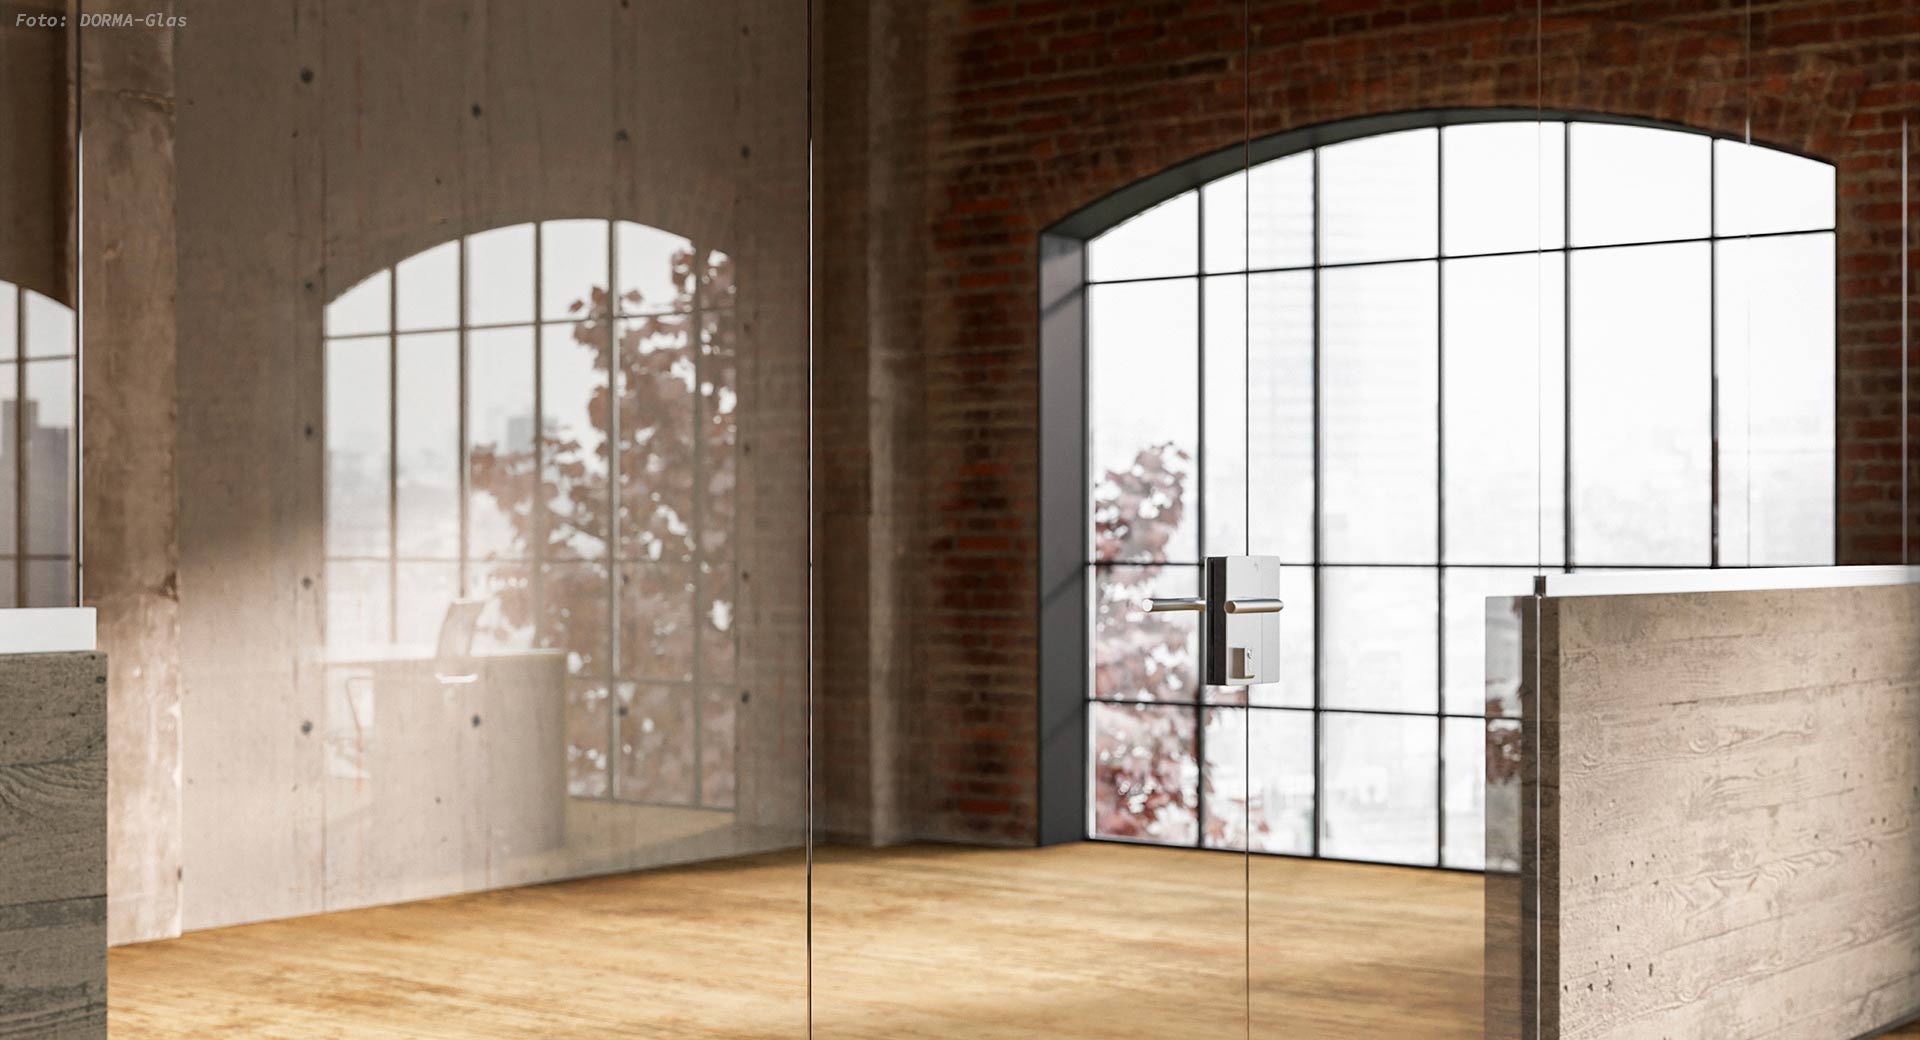 Ganzglasanlage mit Tür, Industrial Look © DORMA-Glas GmbH